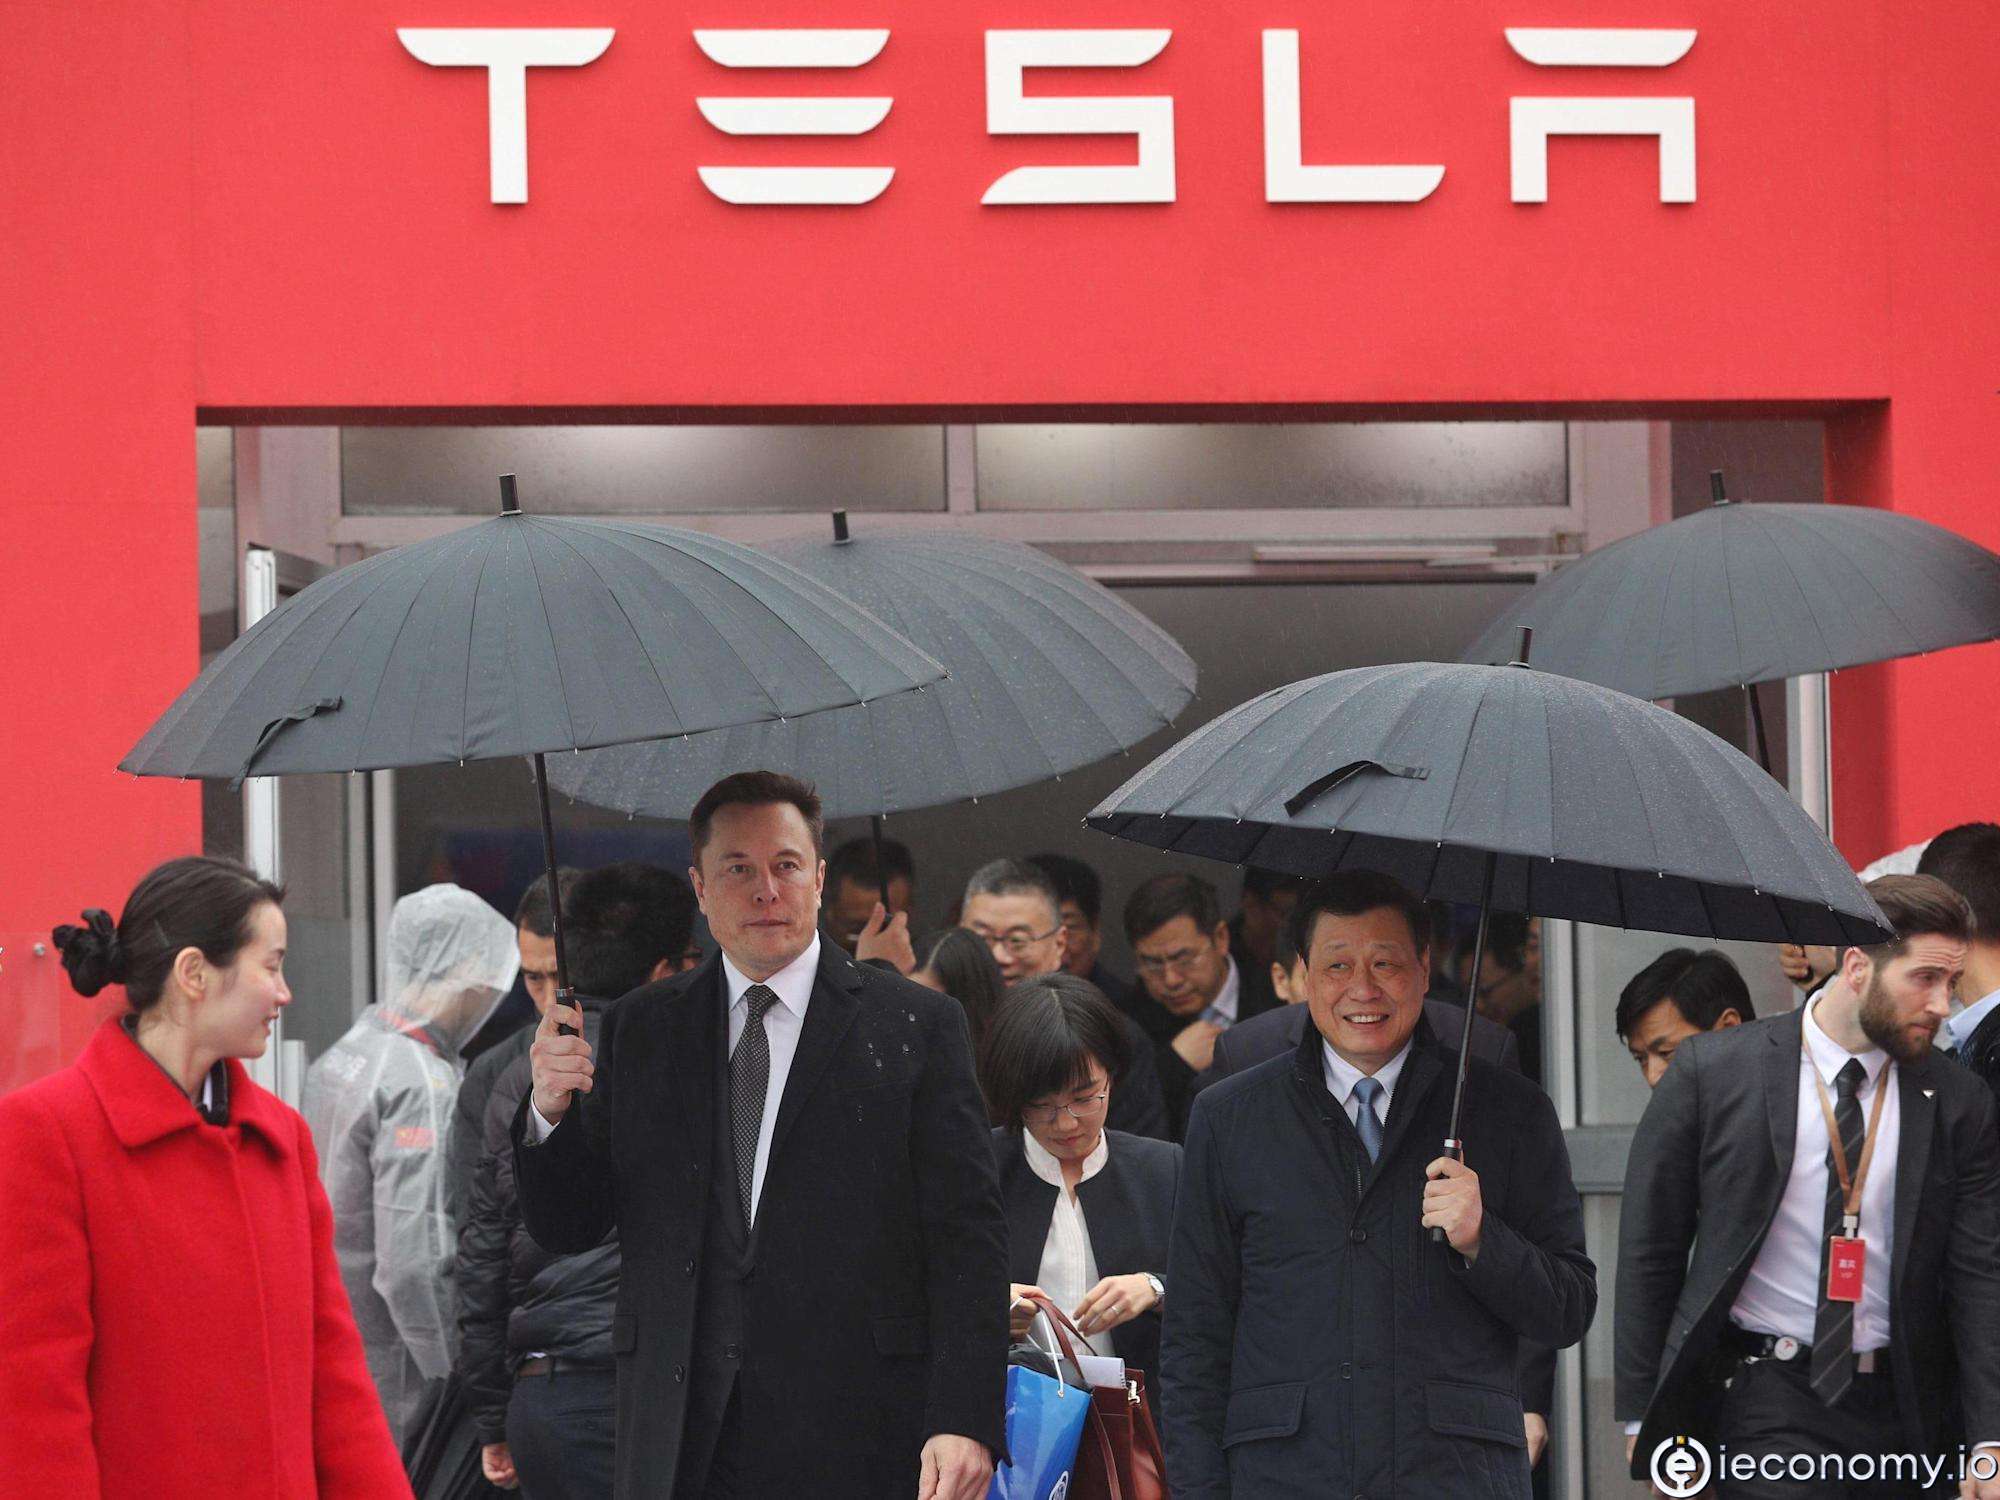 Ticaret savaşı, Tesla'nın Çin'de genişlemesini engelliyor